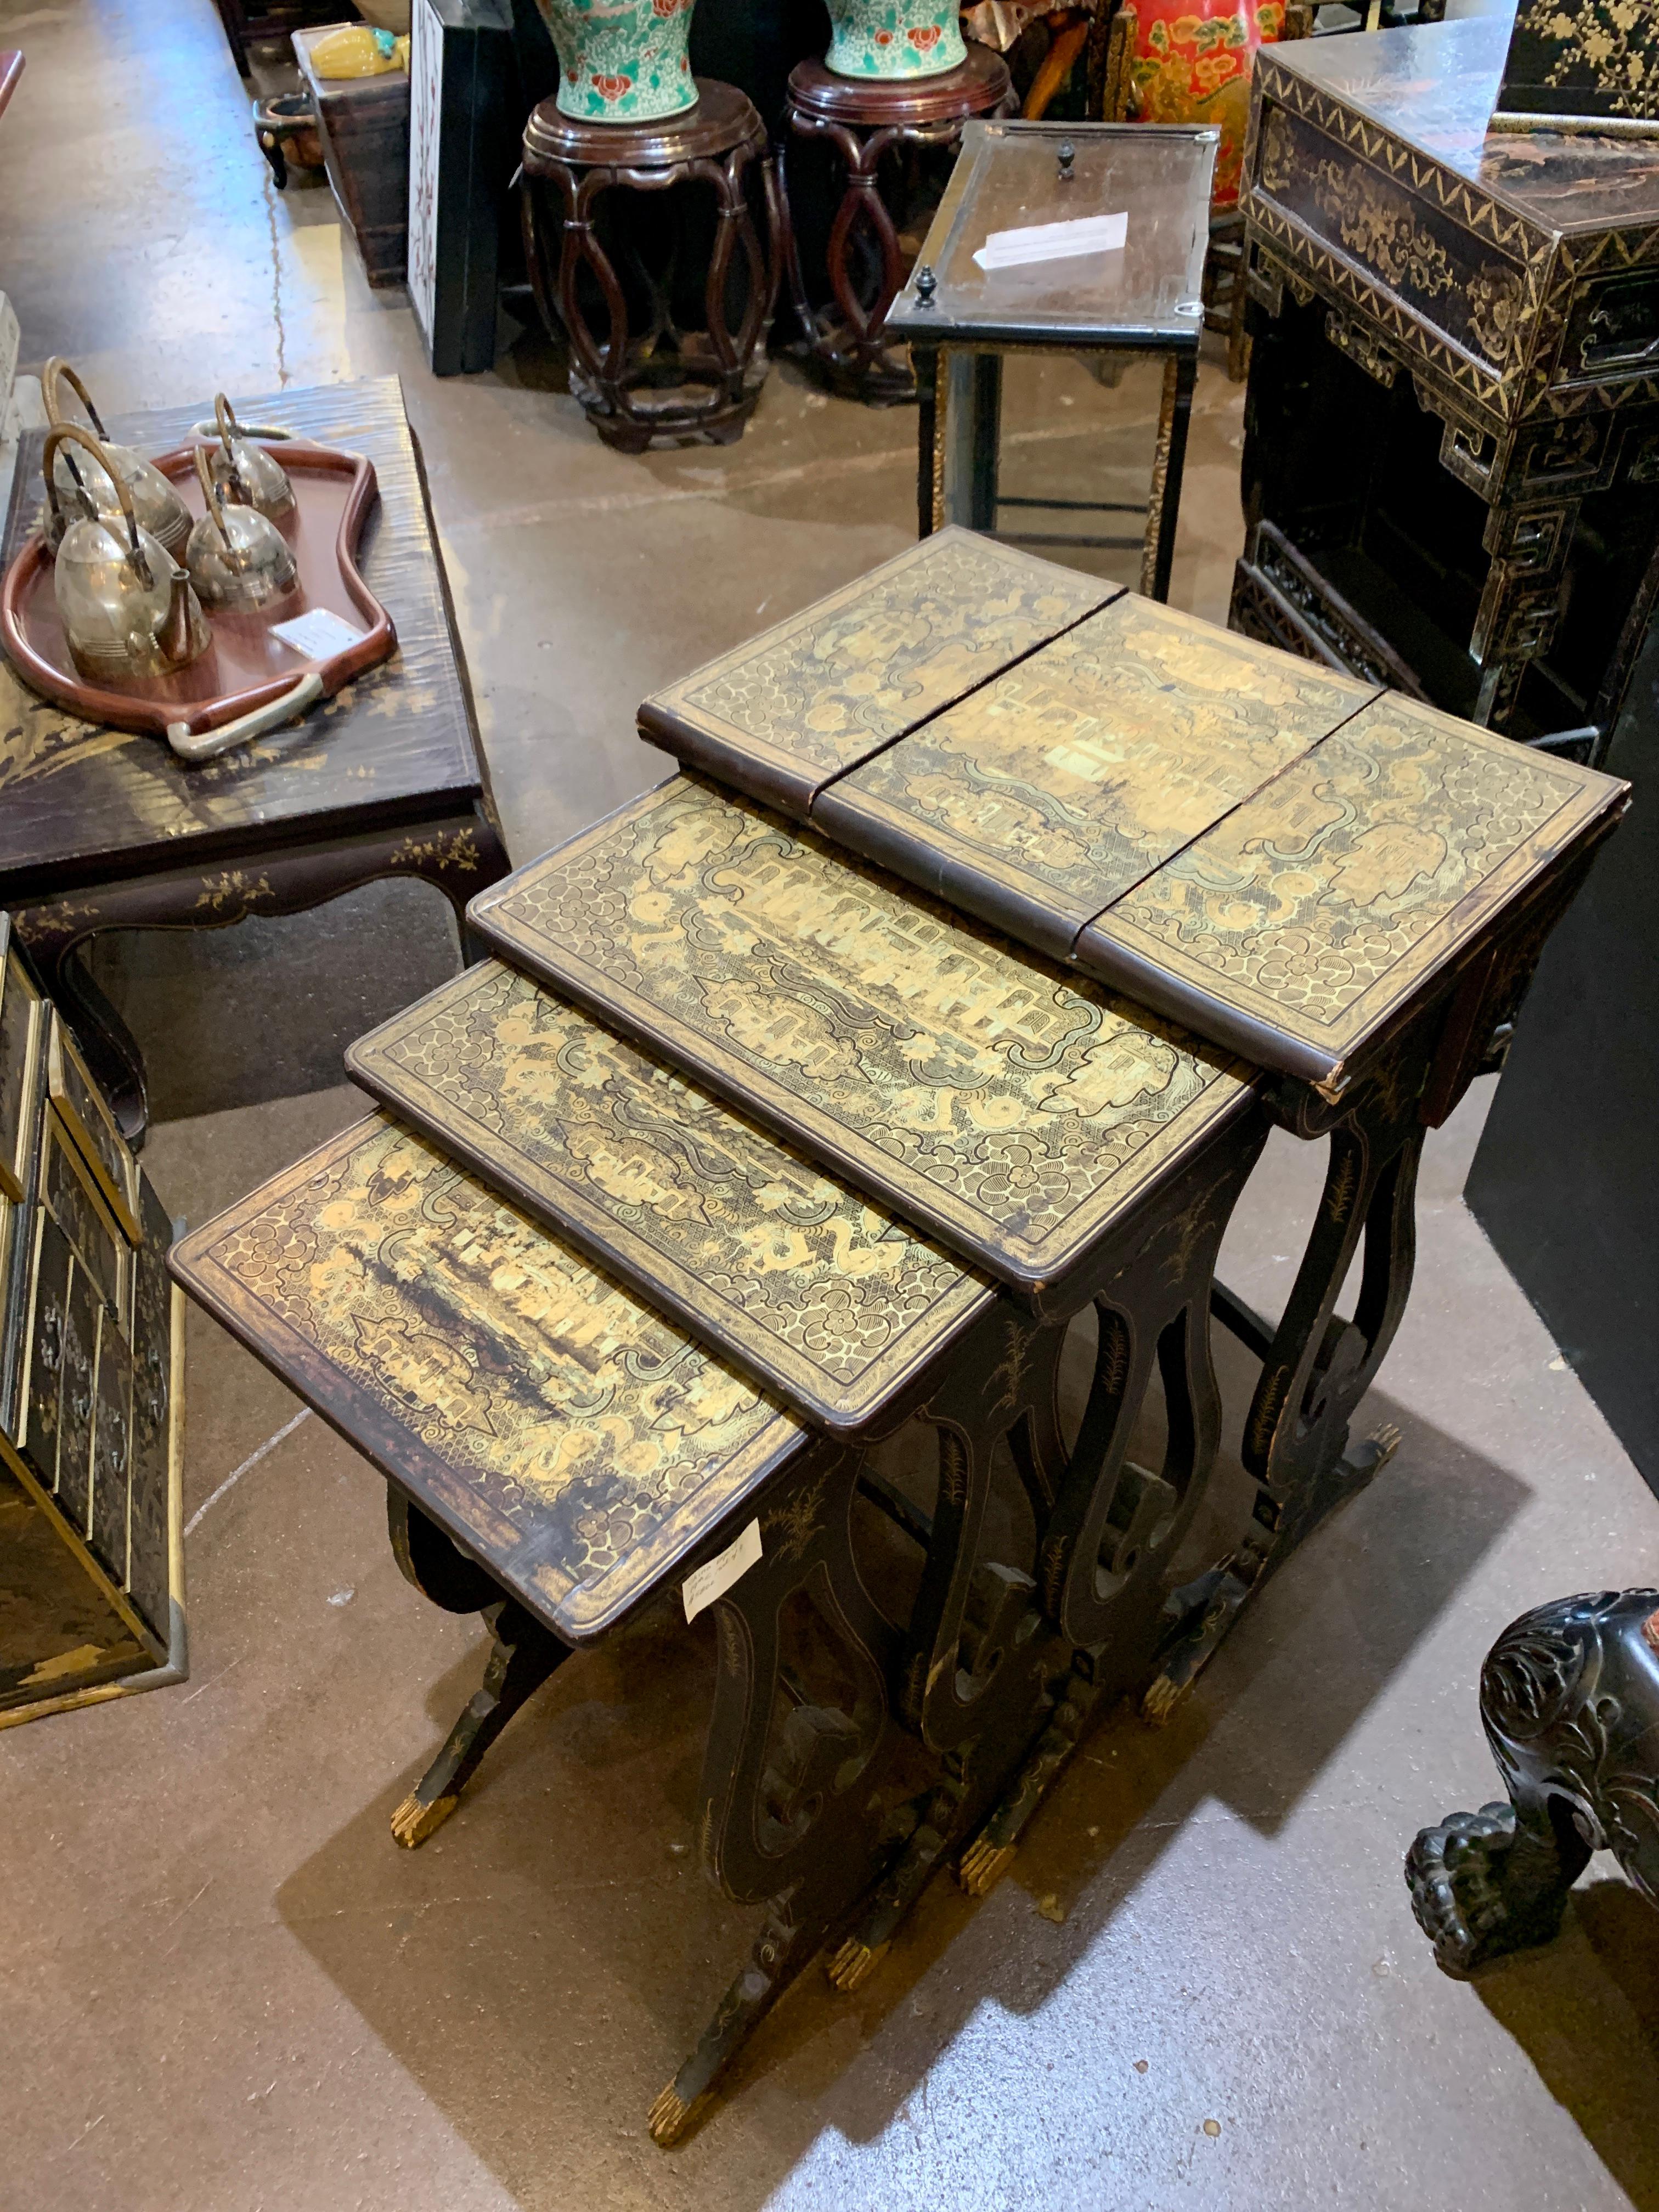 Ein exquisiter und ungewöhnlicher Satz von vier chinesischen Exporttischen aus schwarzem Lack und vergoldeter Bemalung, früh bis Mitte des 19. Jahrhunderts, China. Die größte Tischplatte lässt sich öffnen und dient als Spieltisch.

Dieses elegante